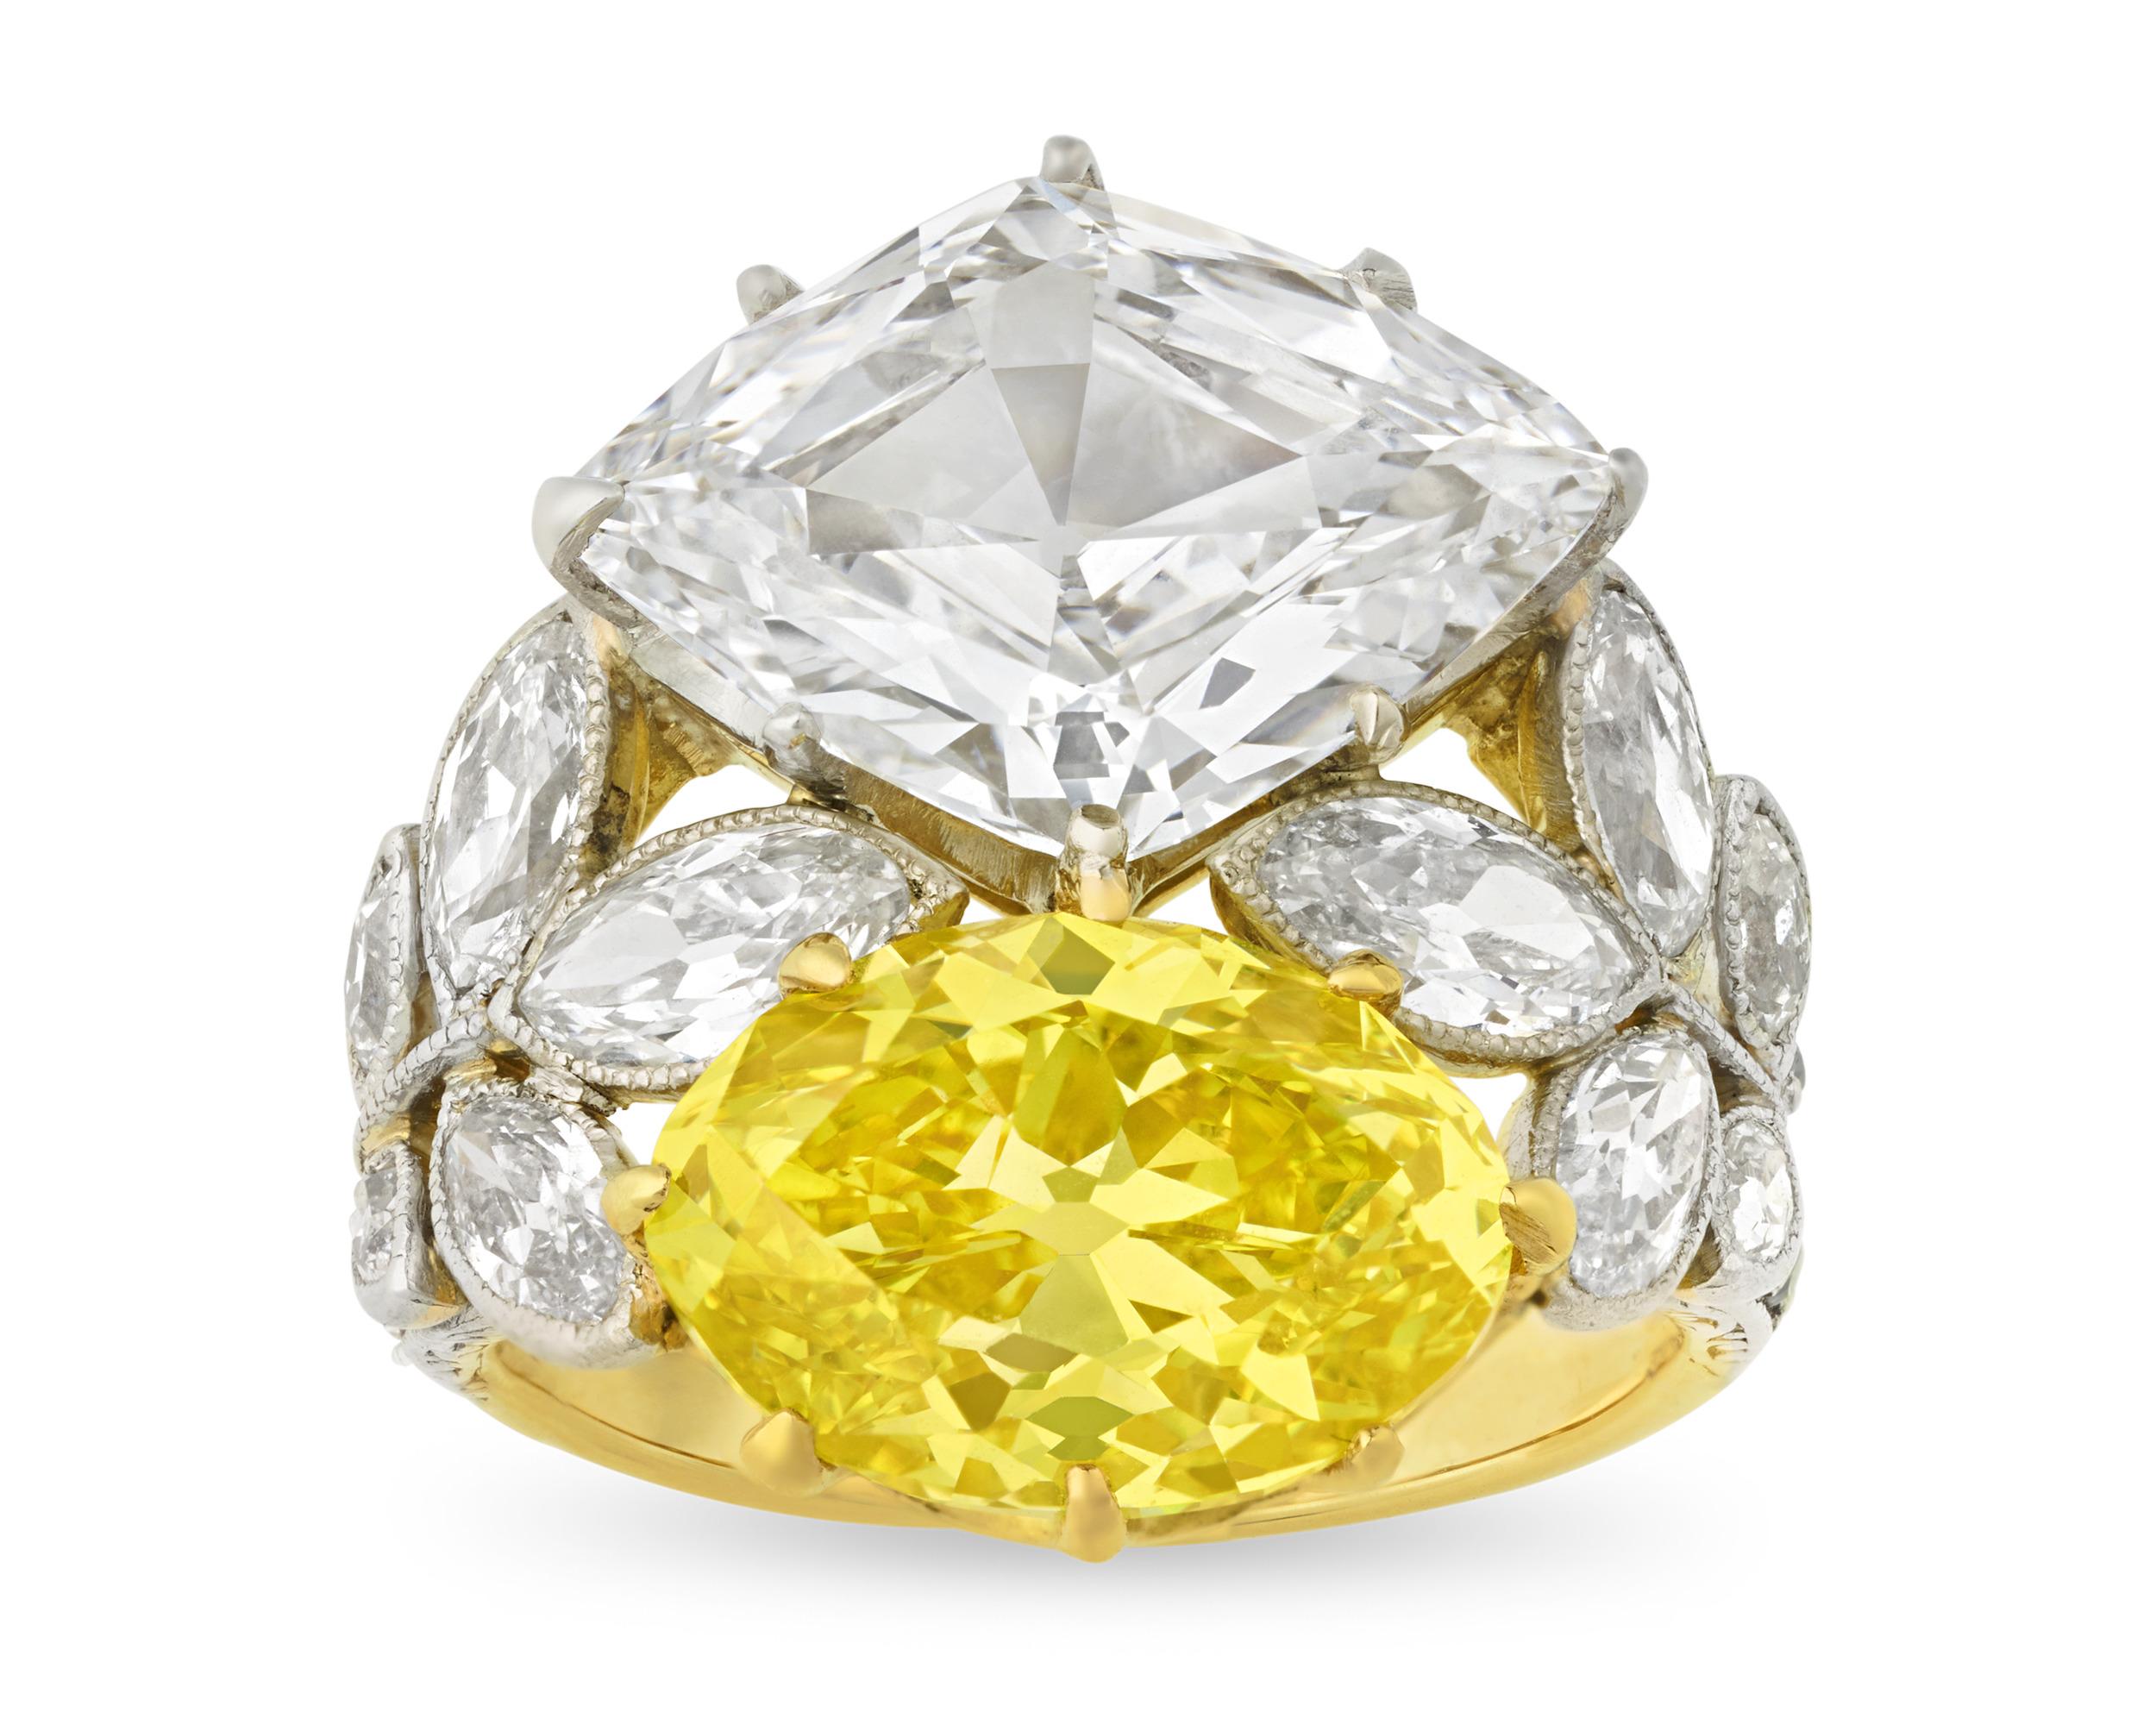 Dieser Ring ist eine atemberaubende Kombination aus zwei der schönsten Diamanten der Welt und wunderschöner Belle-Époque-Kunst. Er zeigt sowohl einen atemberaubenden lebhaften gelben Diamanten als auch einen außergewöhnlichen weißen Diamanten vom